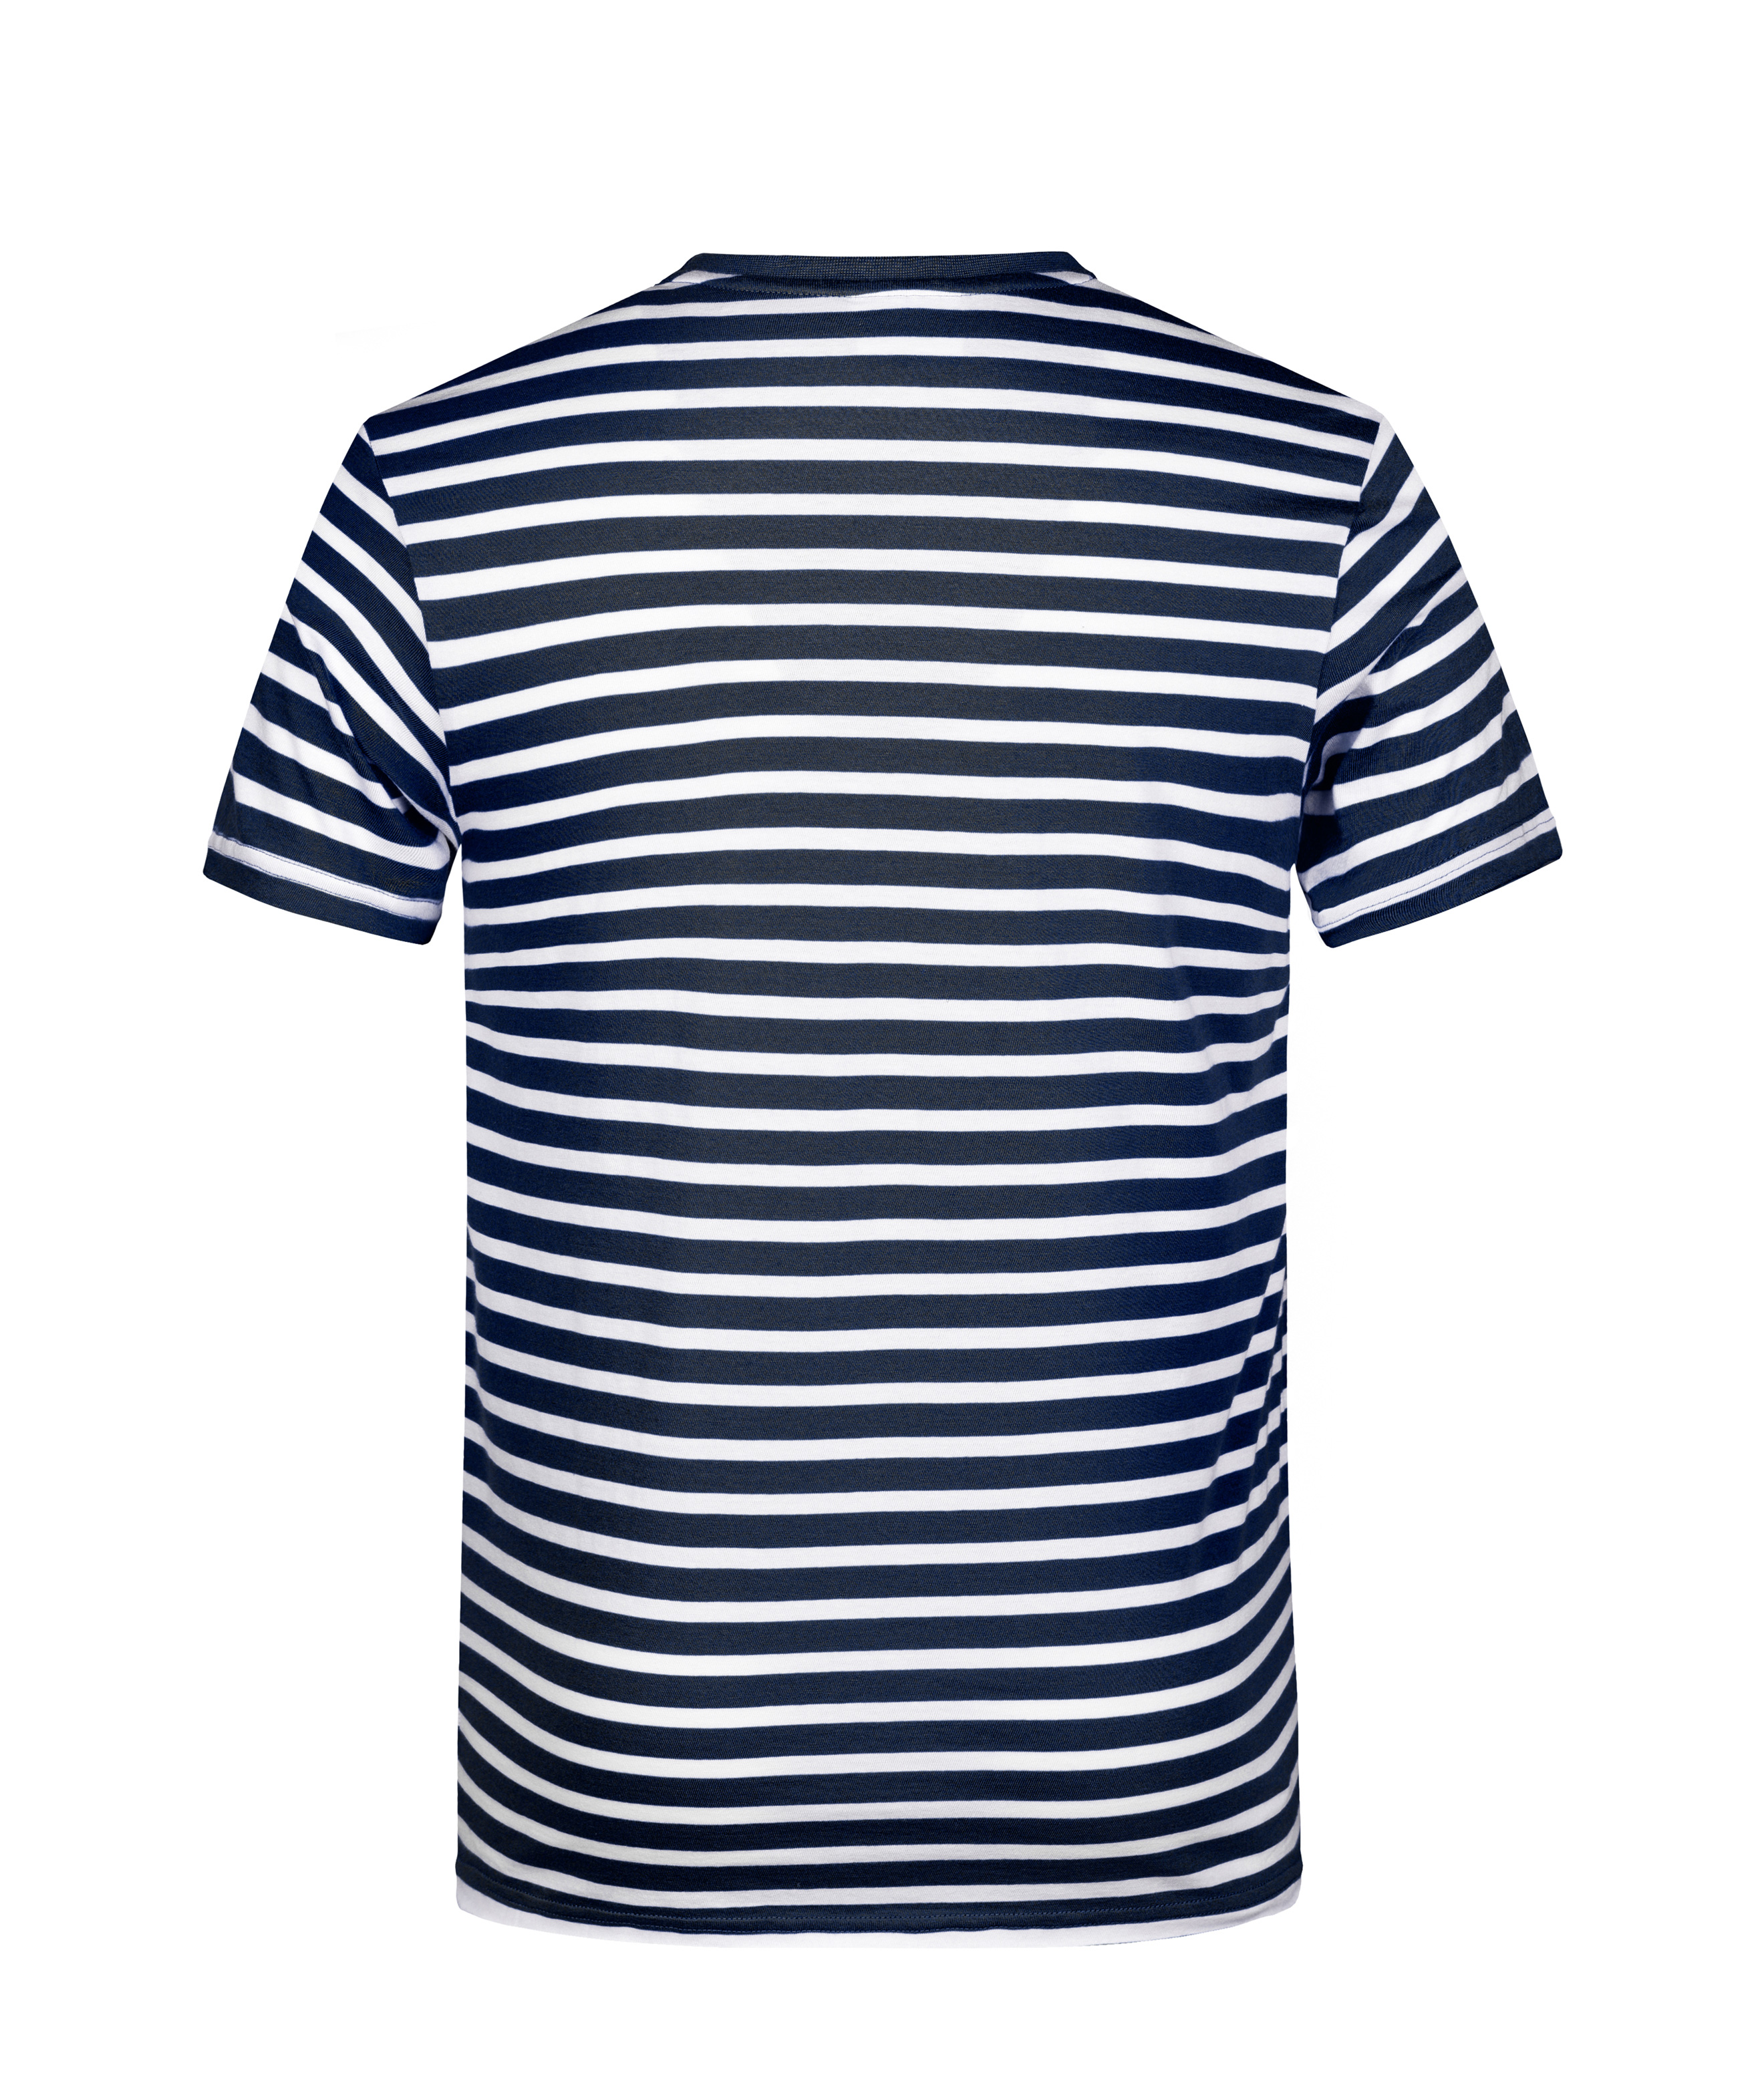 Men Men's T-Shirt Striped Navy/white-Promotextilien.de